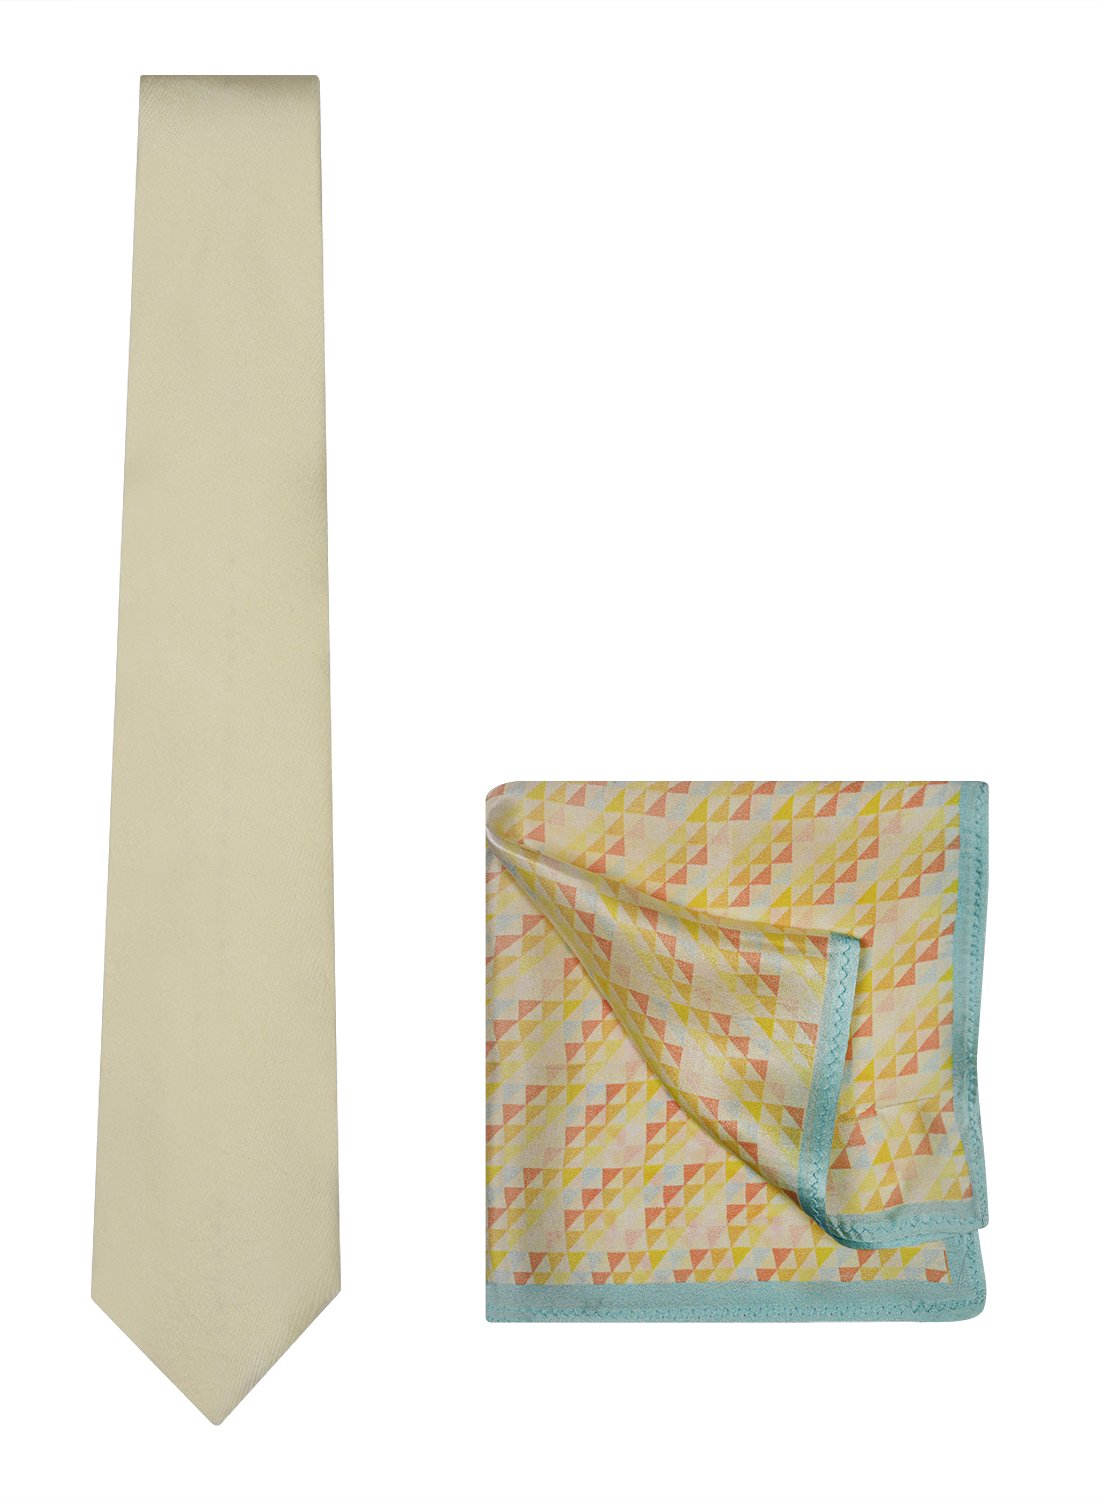 Chokore Off White color Plain Silk Tie & Peach & Light Blue color silk pocket square set